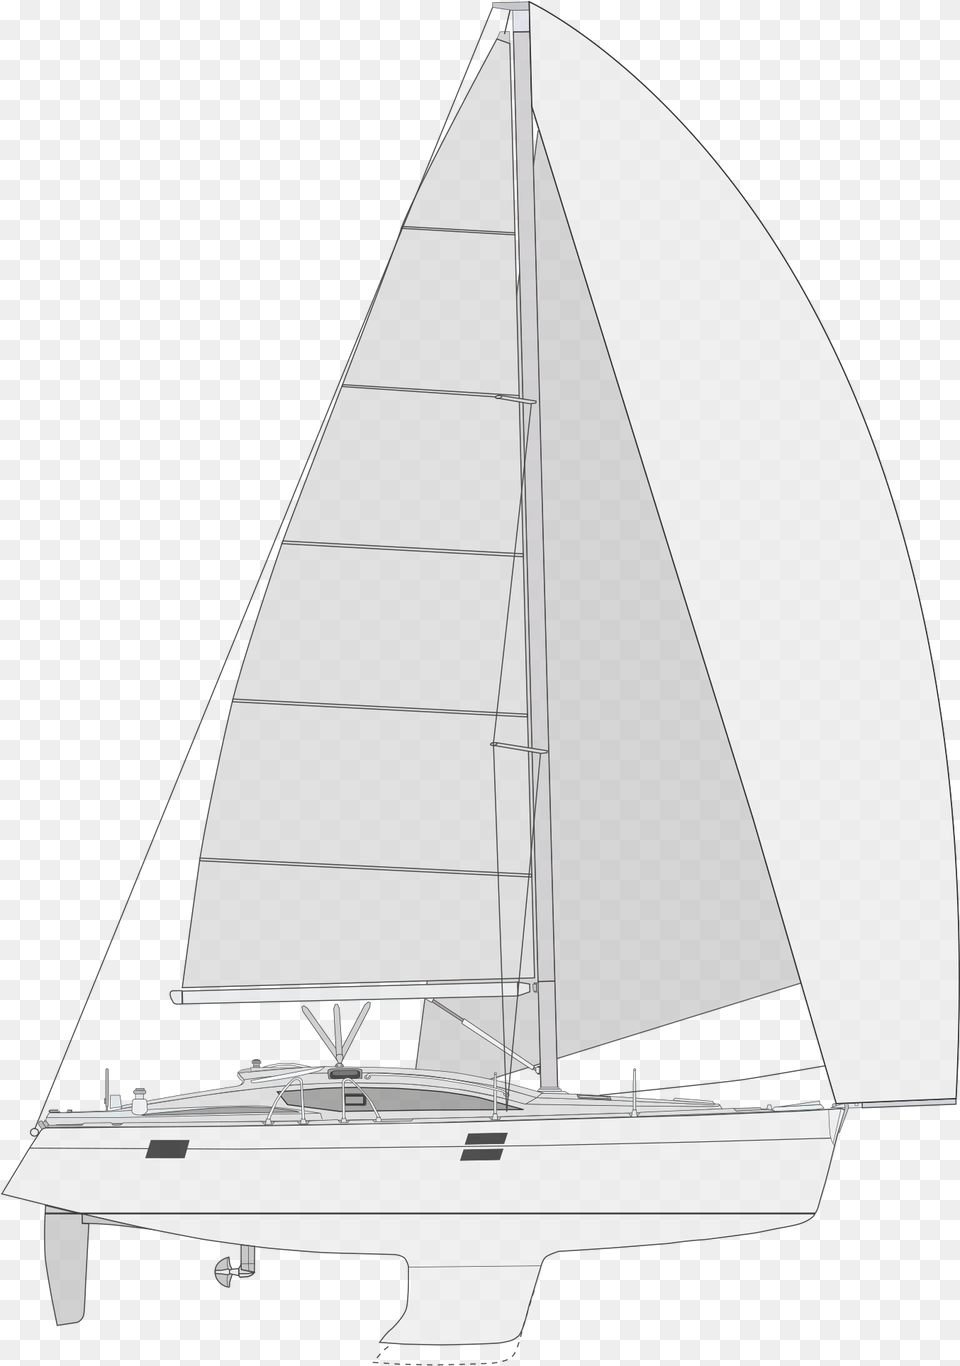 Sail, Boat, Sailboat, Transportation, Vehicle Png